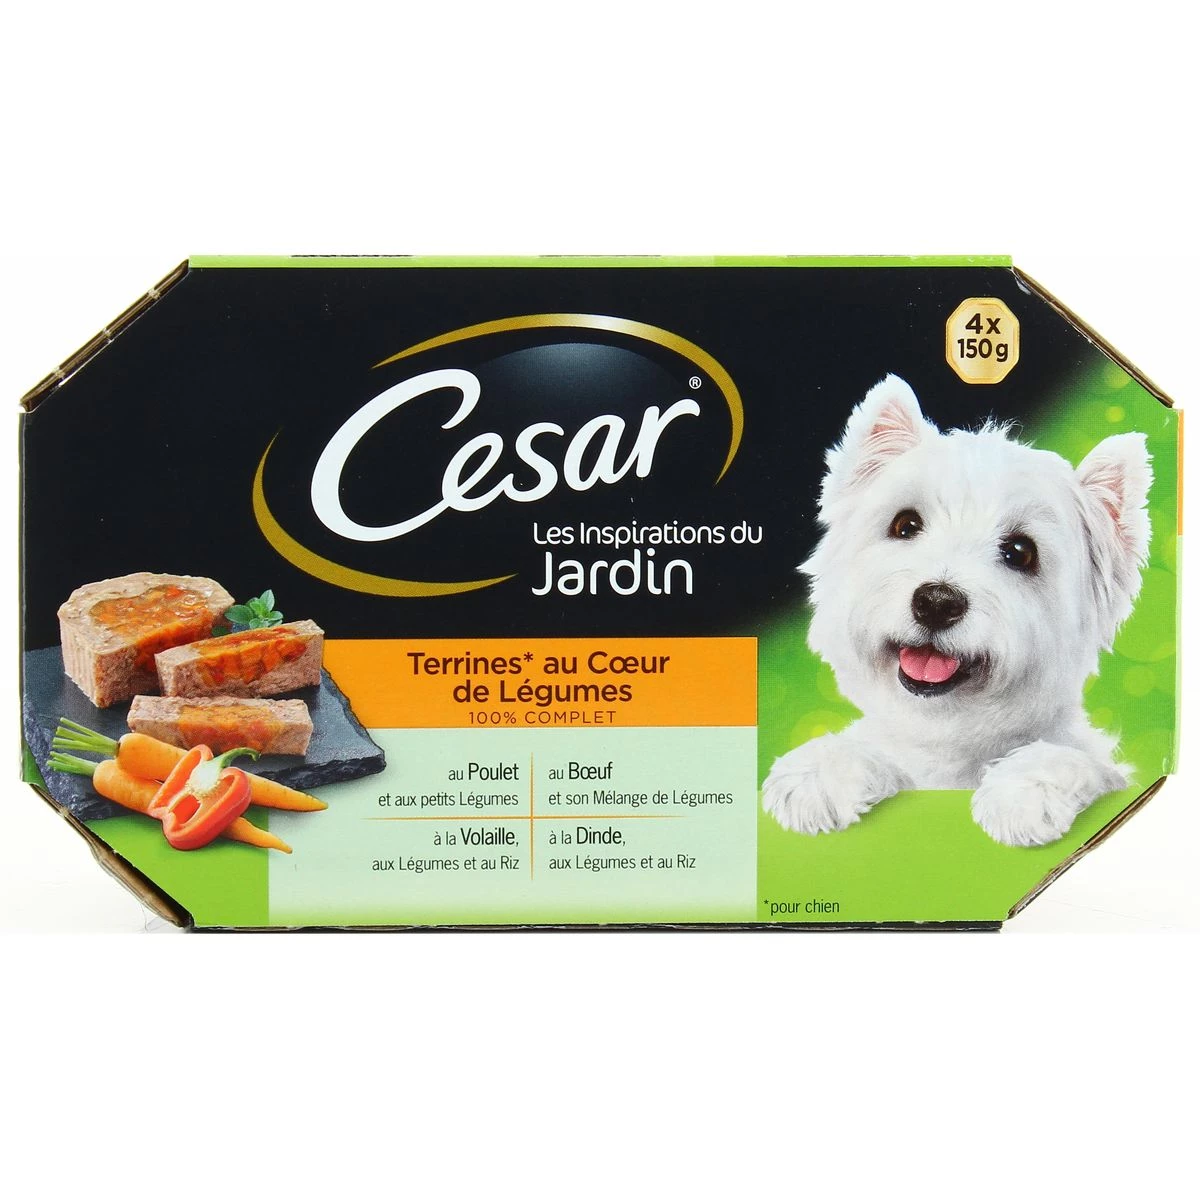 狗用菜心肉酱 4x150g - CÉSAR